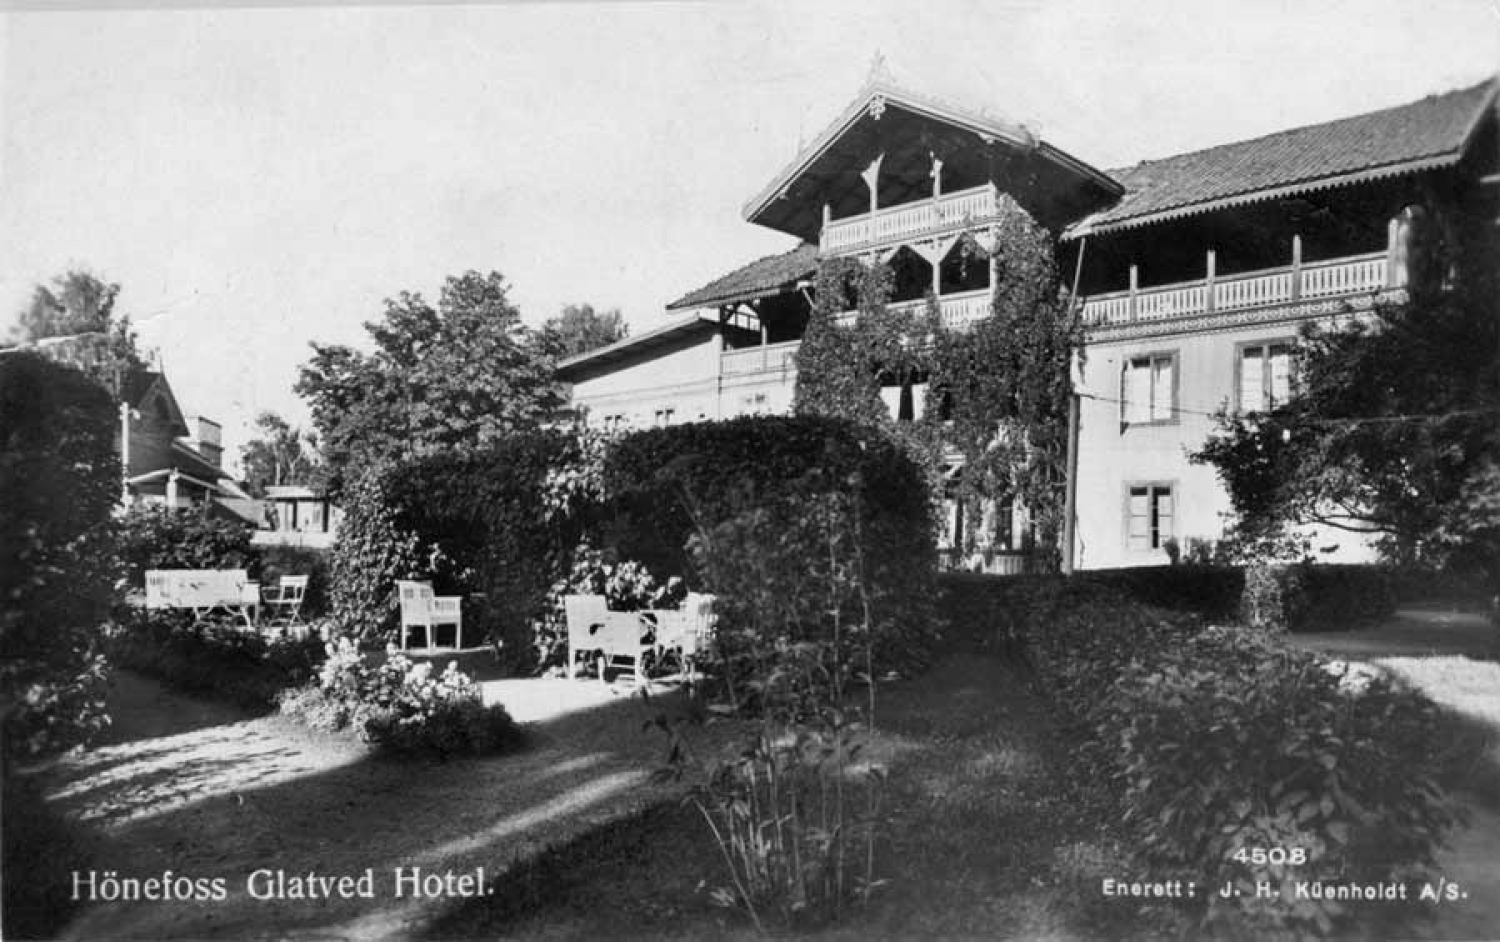 Glatved hotell var et av landets mest fornemme